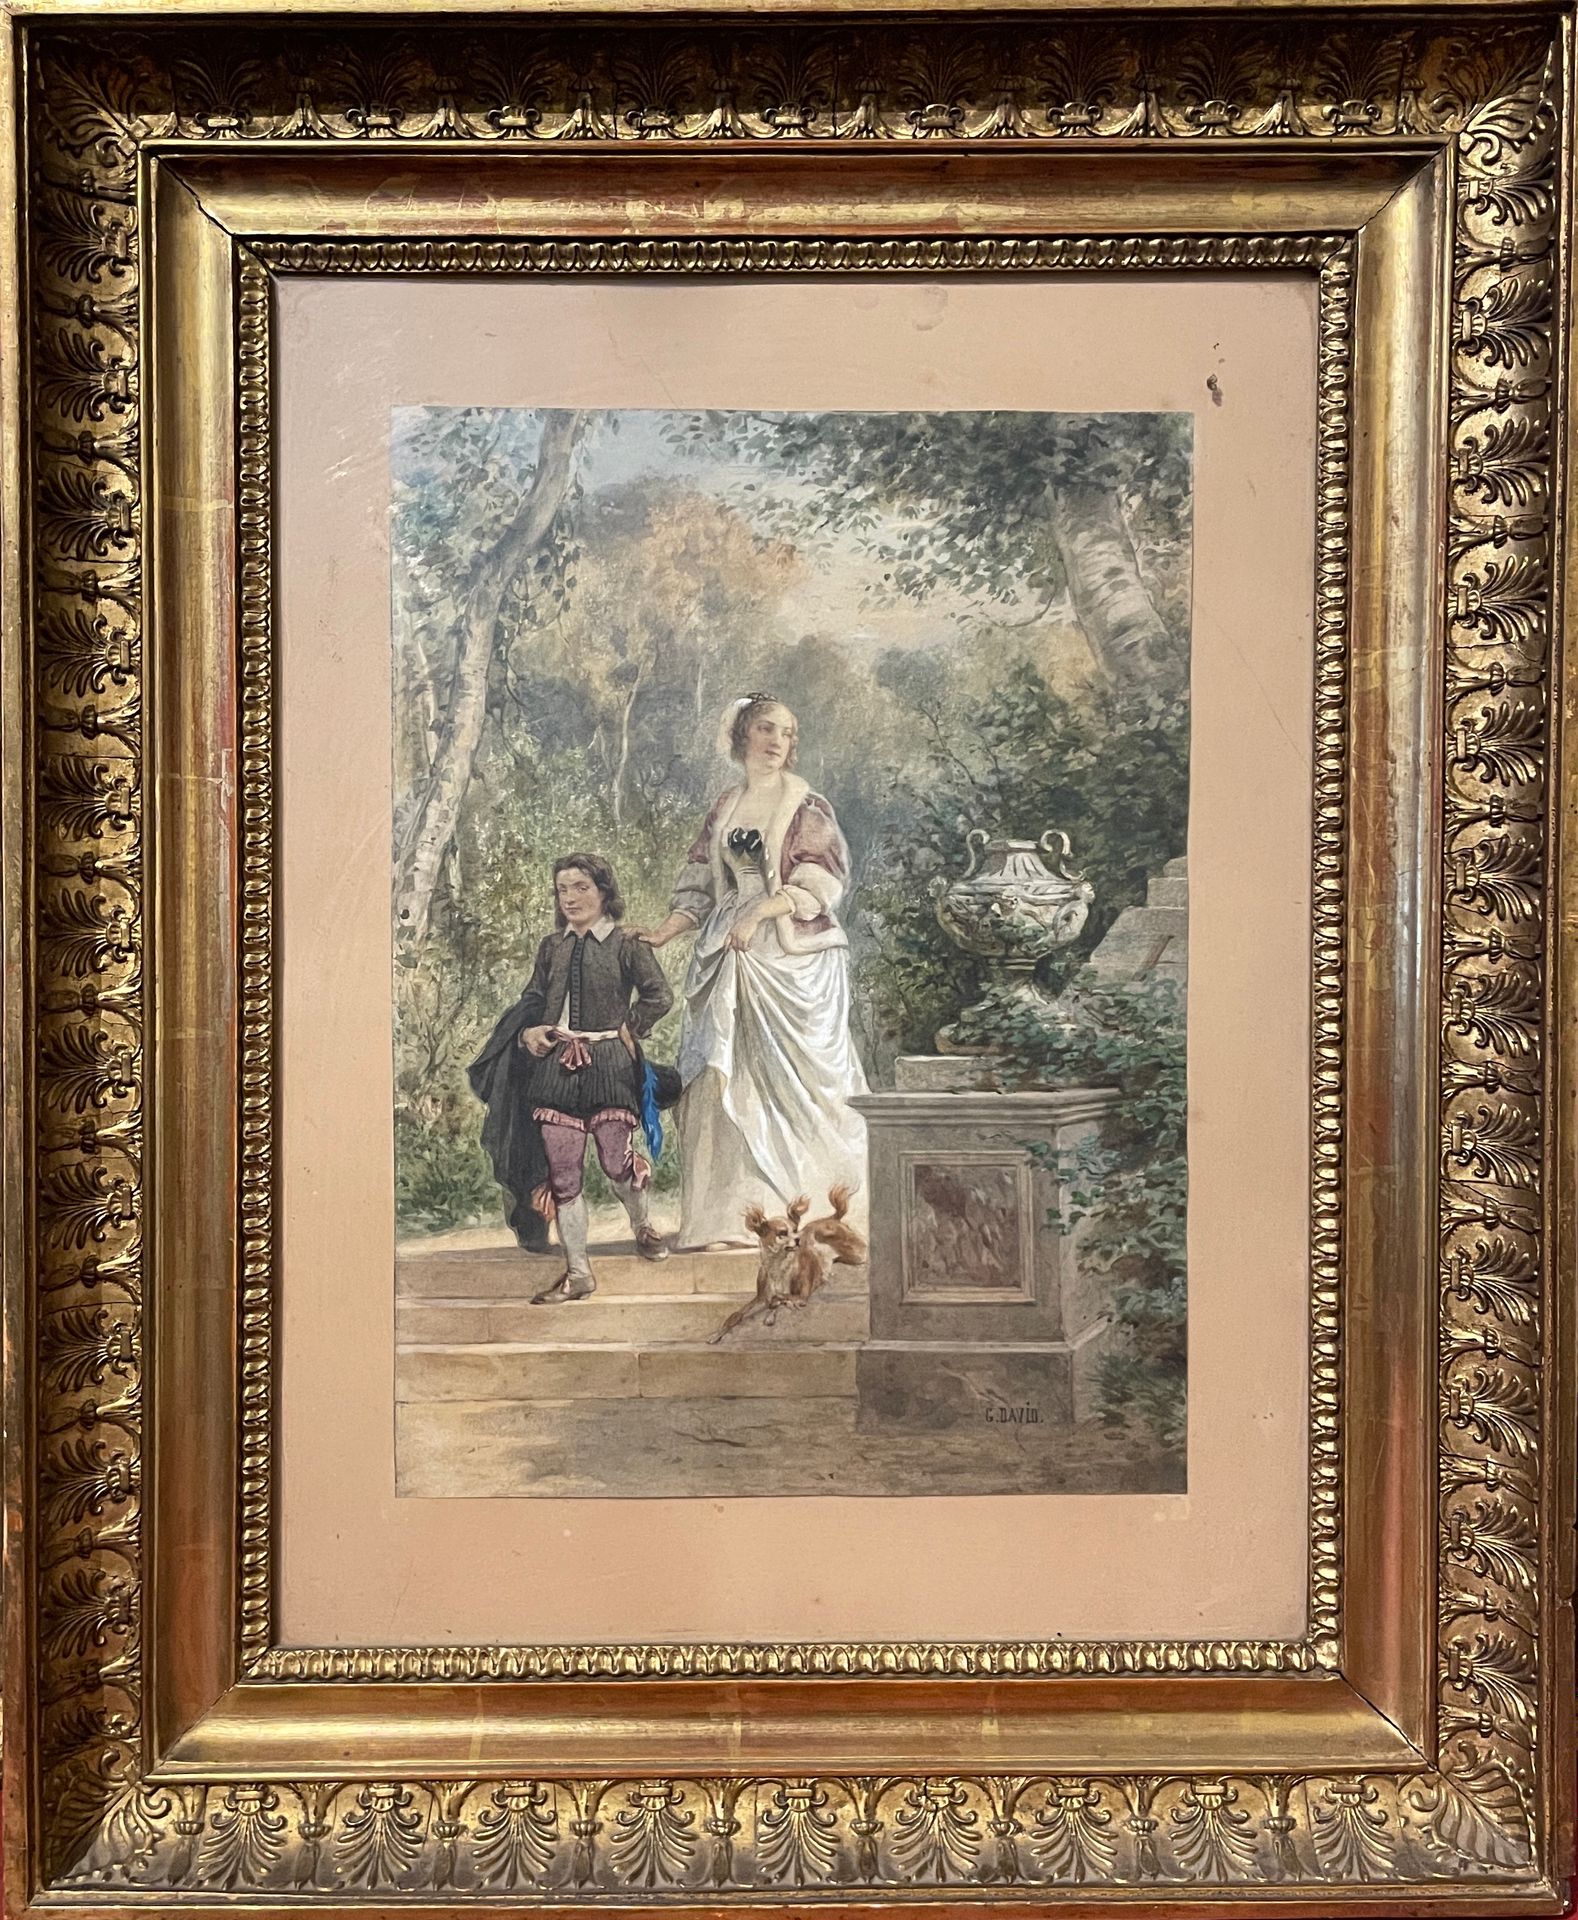 Null G DAVID(活跃于19世纪)

佩奇和他的夫人

水彩画与水粉画

34 x 25厘米

右下方有签名